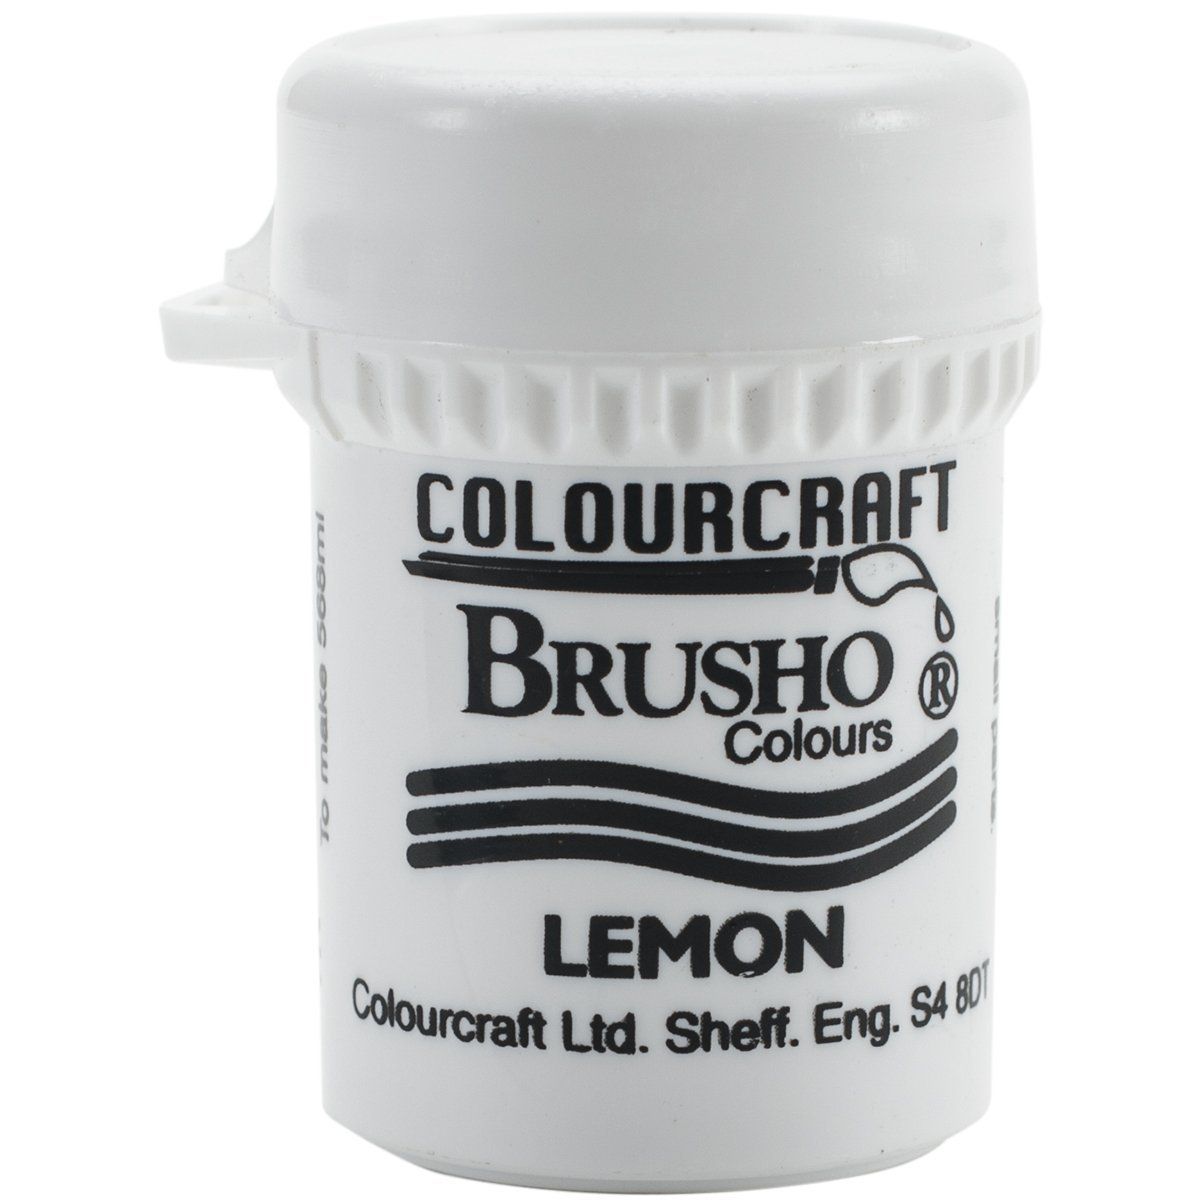 Brusho Crystal Colour - Lemon 15 gm